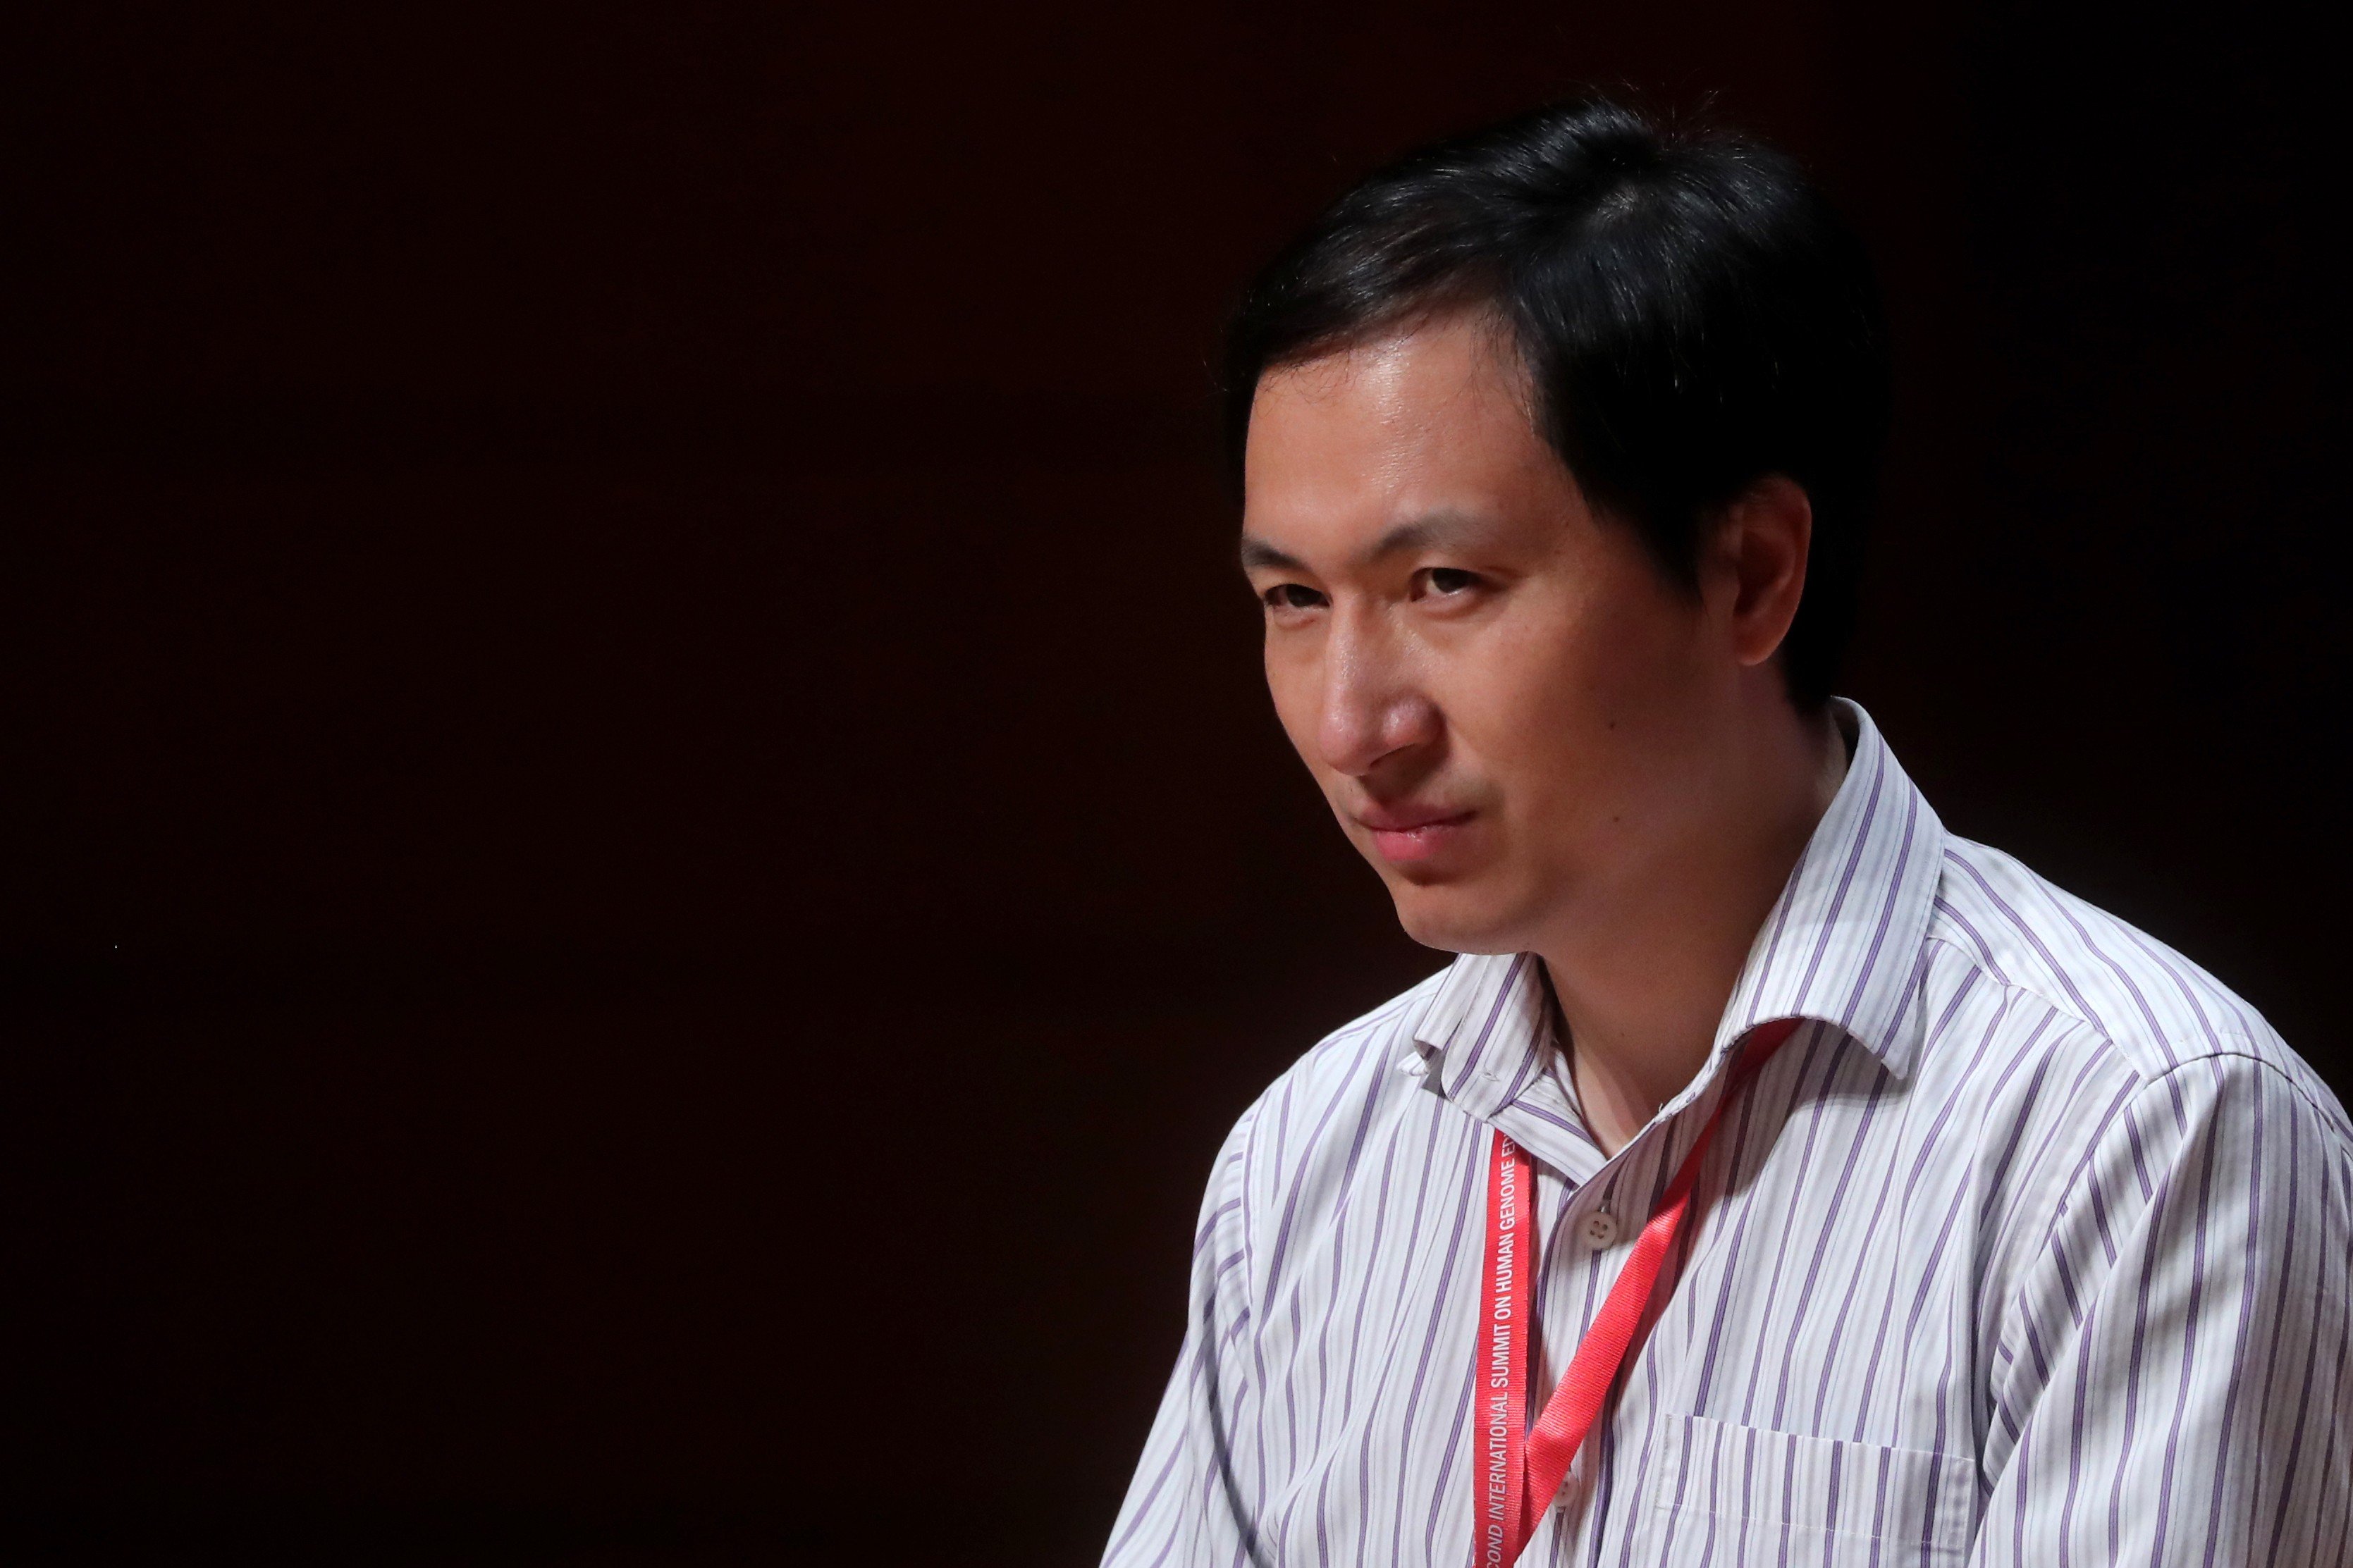 Chinese biologist He Jiankui. Photo: Sam Tsang